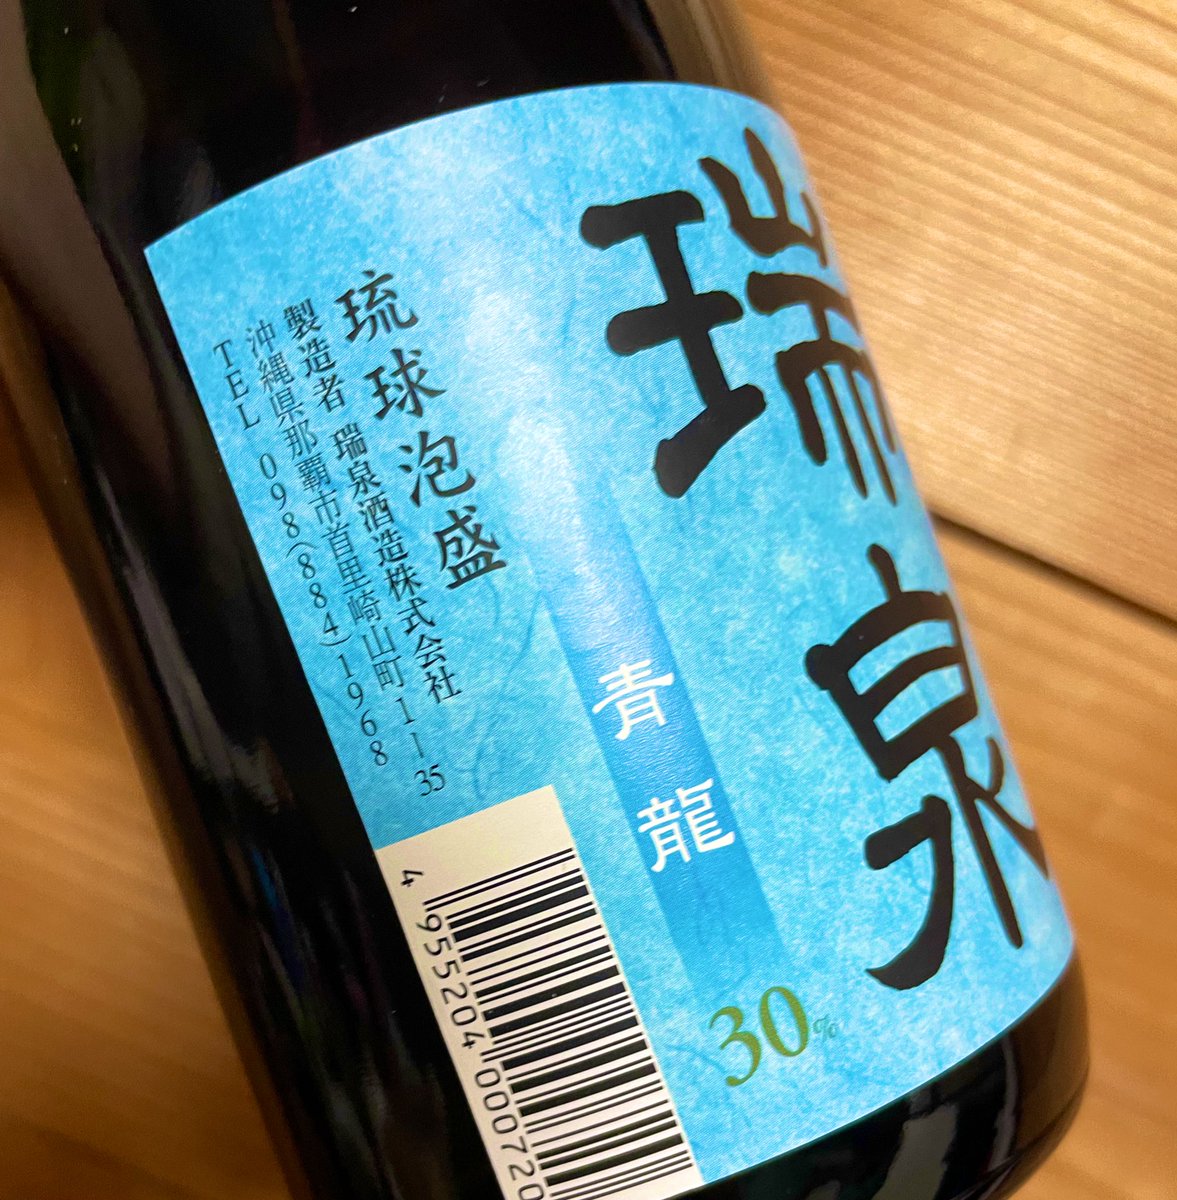 test ツイッターメディア - 日本酒に蒼龍あるのは知ってたけど瑞泉にも青龍なんてがりさくみがあるやつあるんだ…💚💜となり買ってしまったもの https://t.co/hyrGi6SsA5